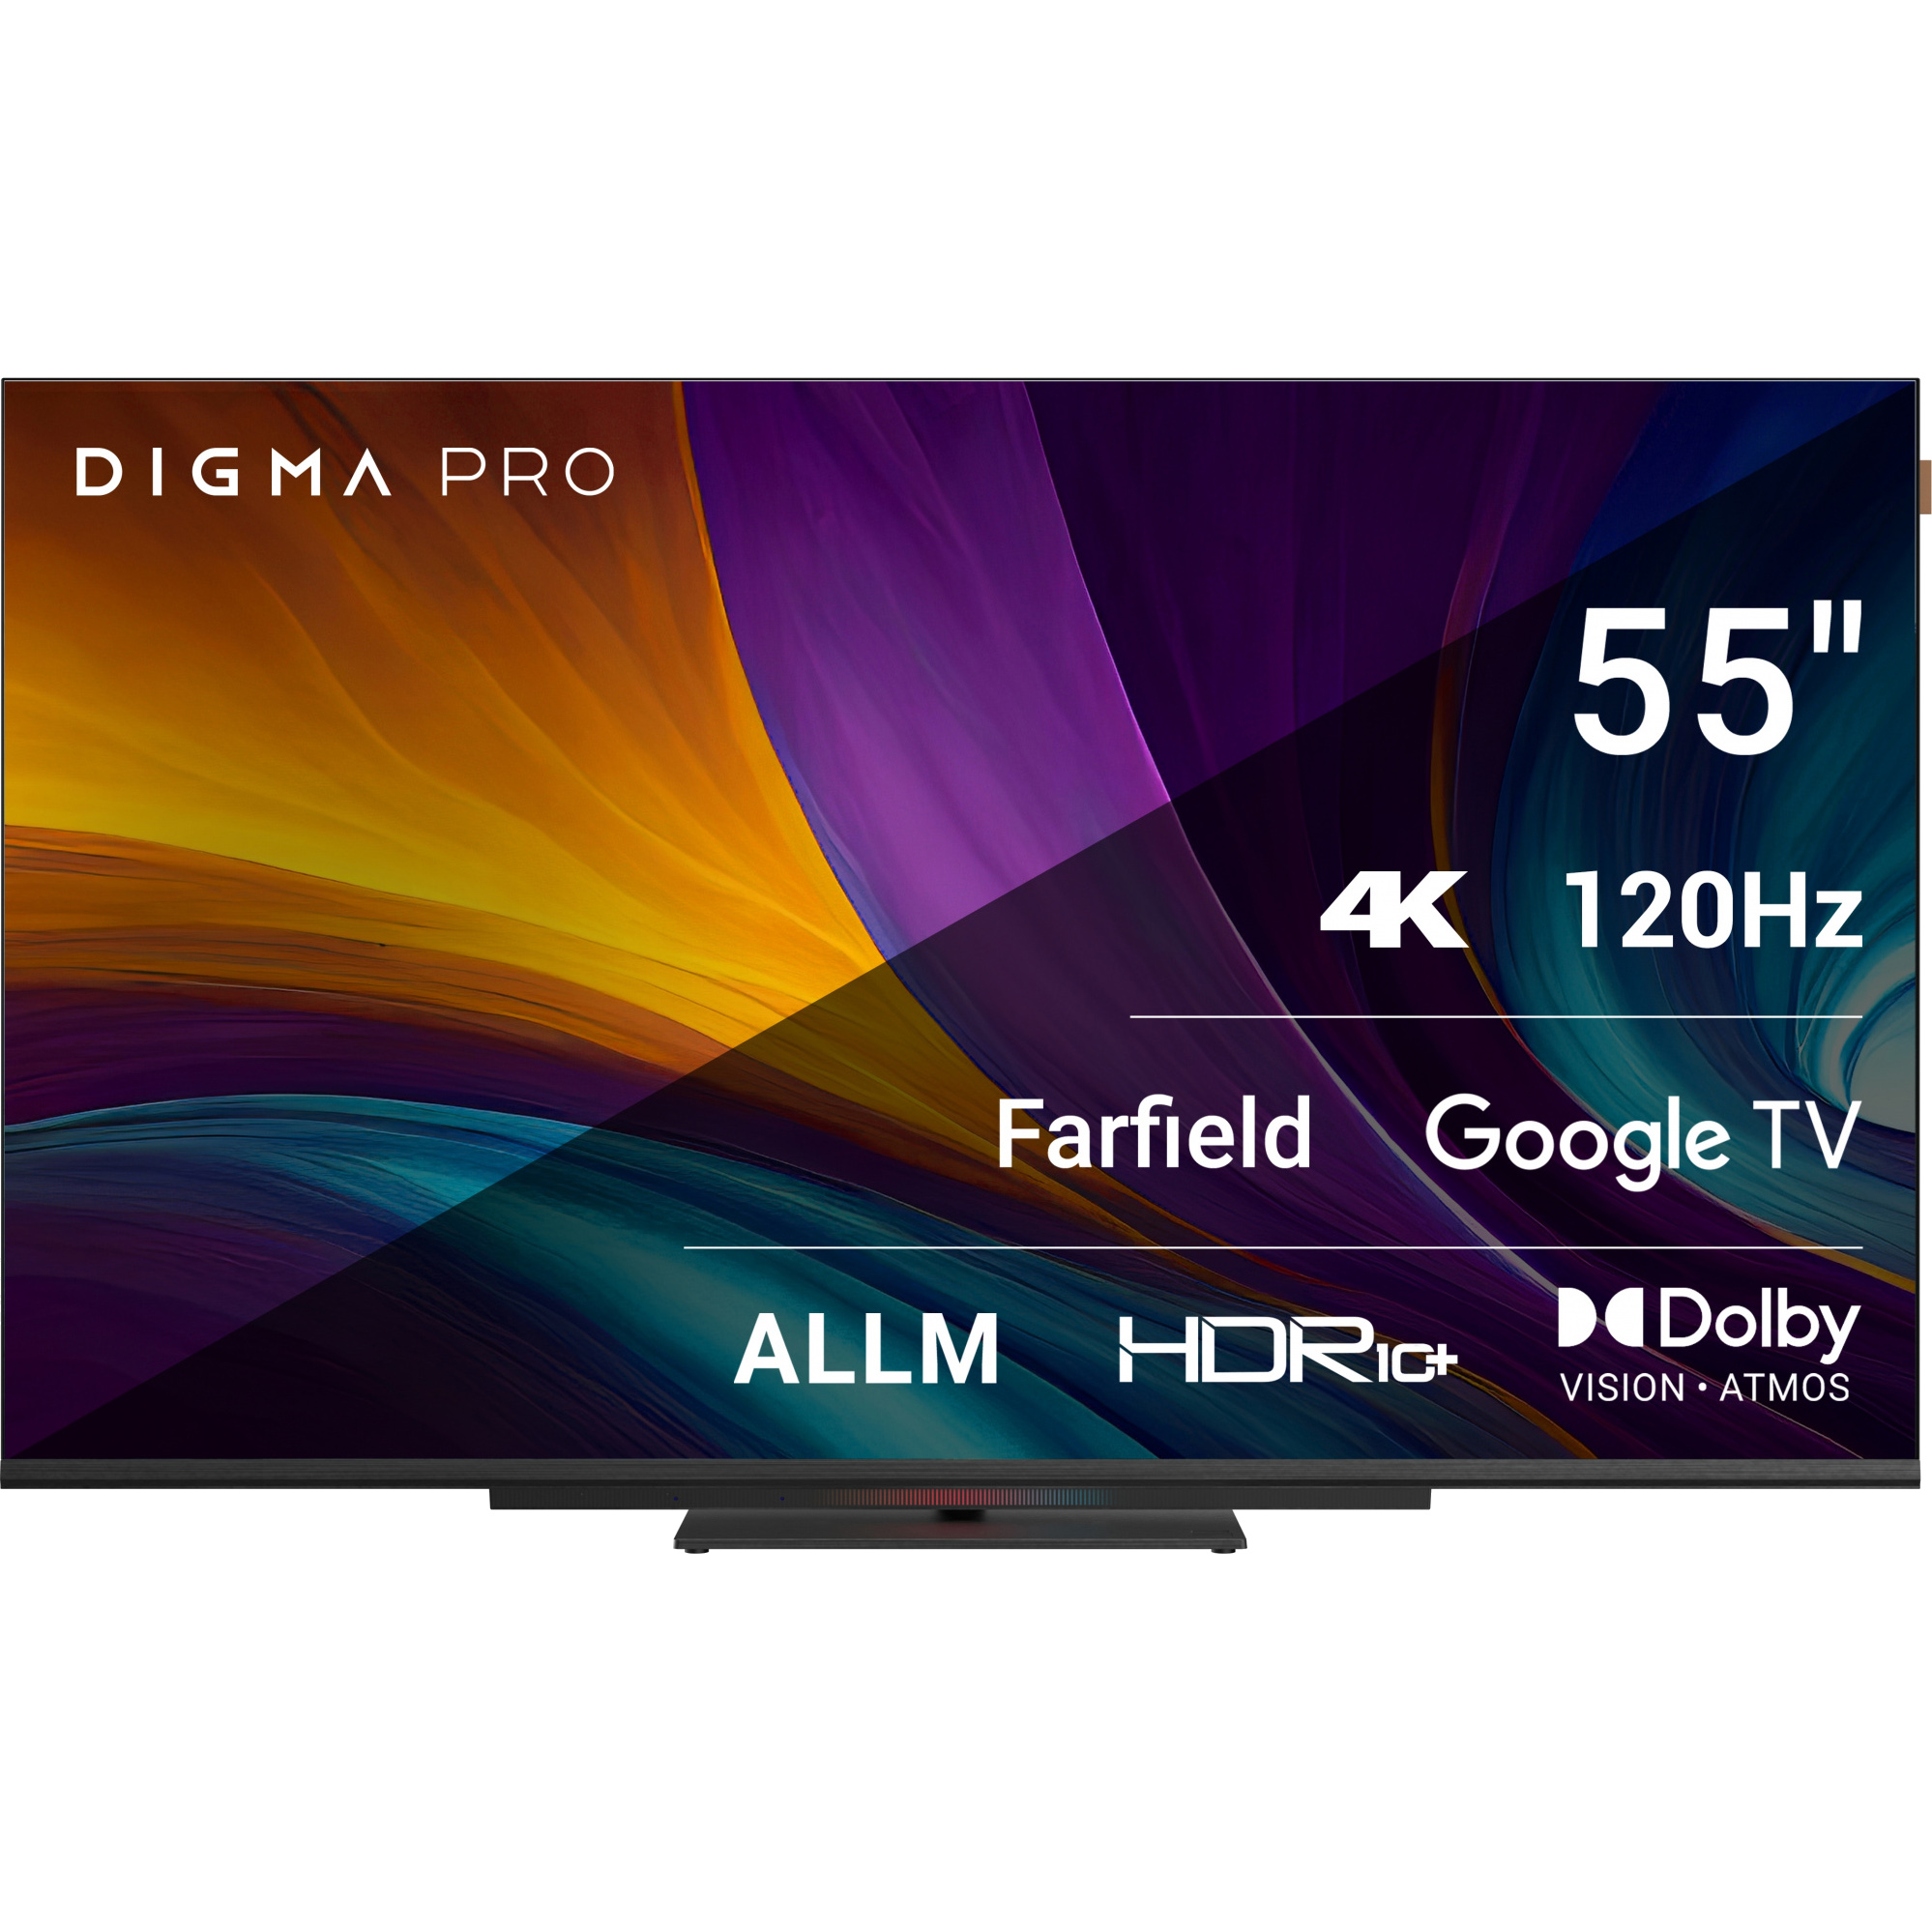 Телевизор Digma Pro 55 55С цена и фото